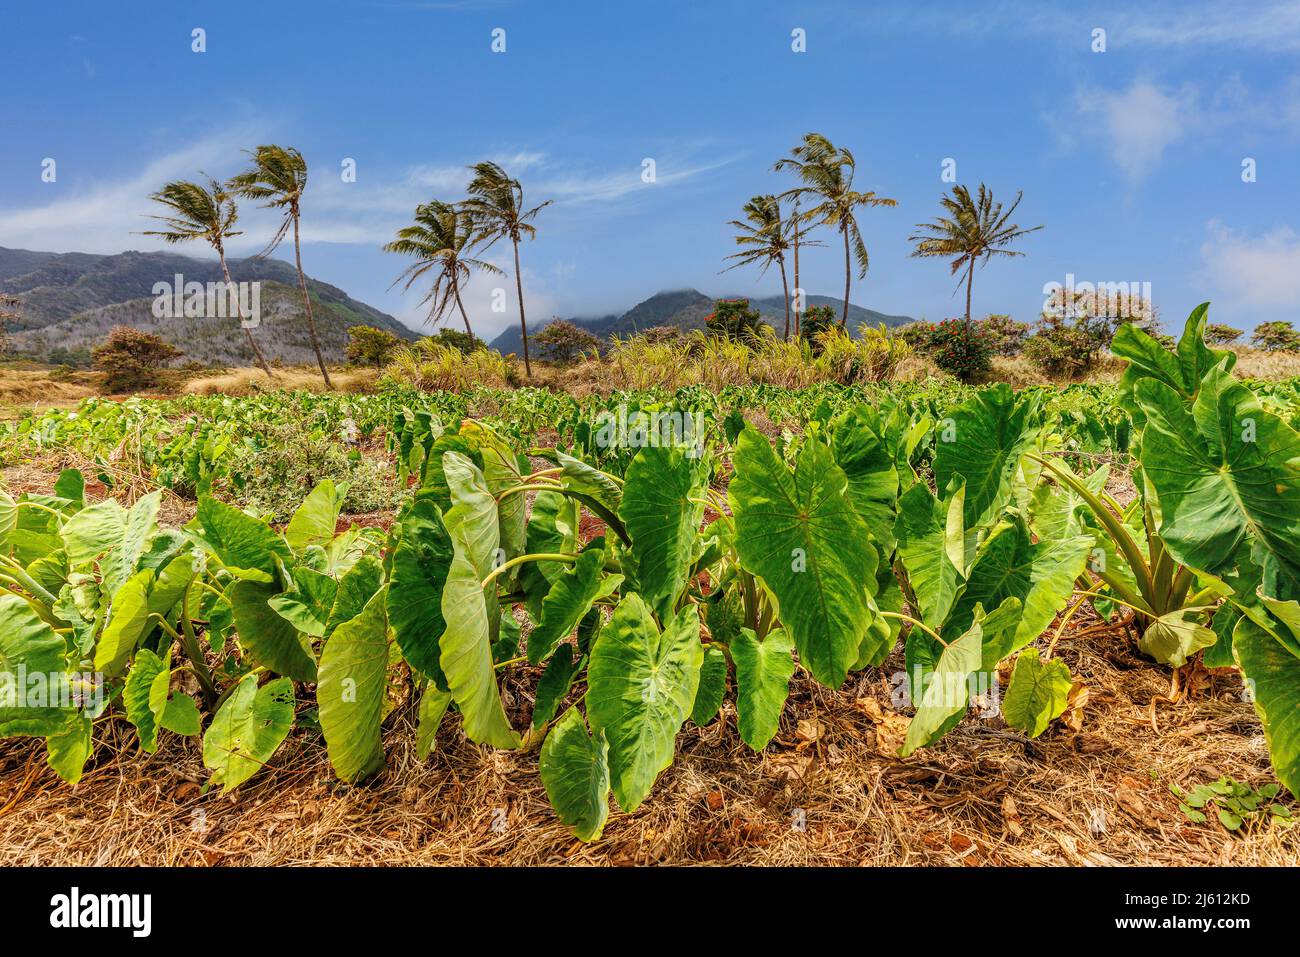 El taro de tierra seca, Colocasia esculenta, conocido como Kalo en Hawai, es un cultivo culturalmente significativo y la planta estatal de Hawai. Es un cultivo de raíz almidonada Foto de stock